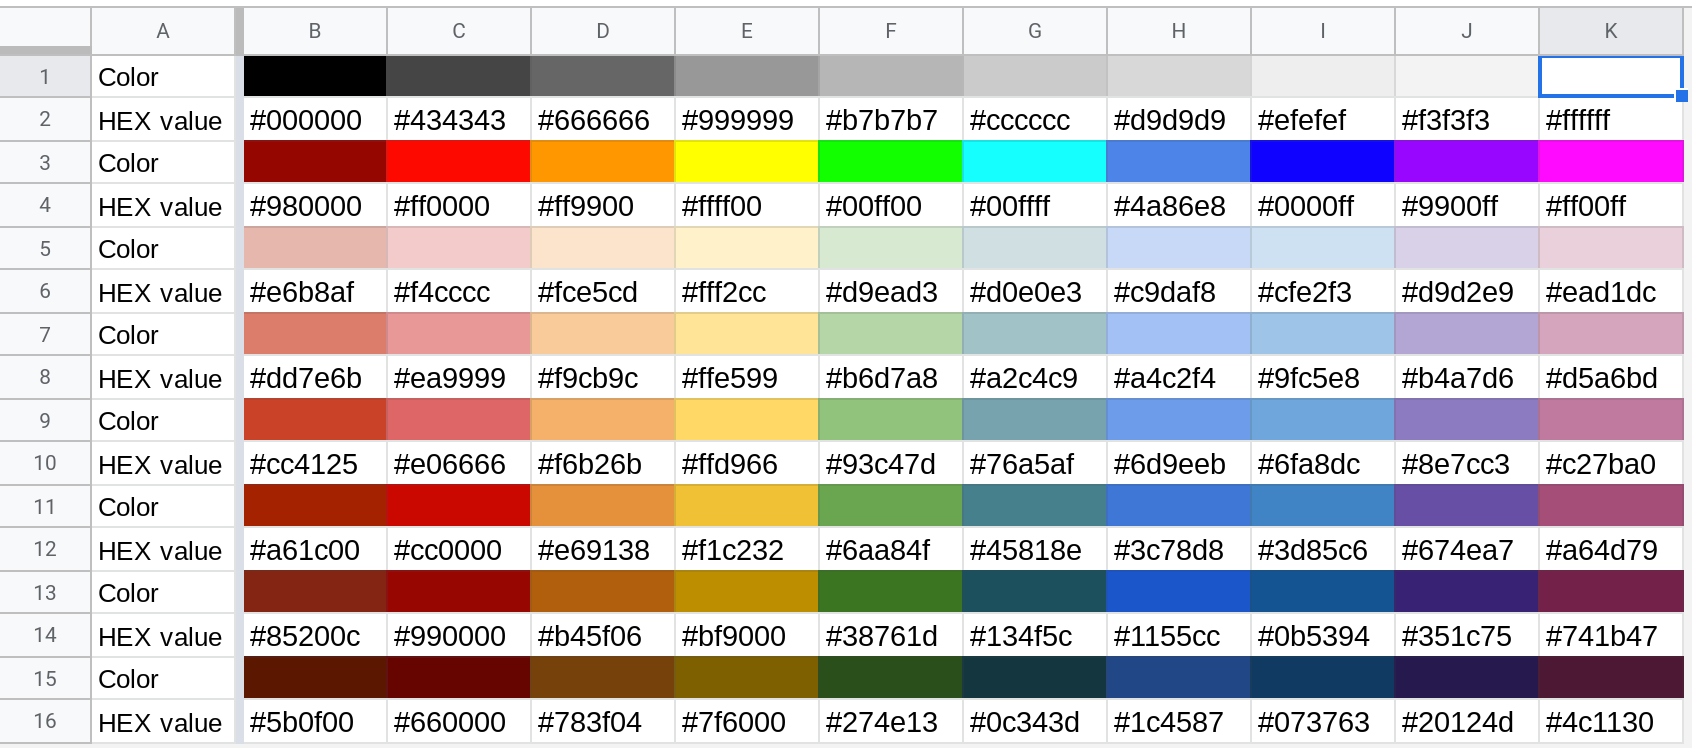 Bạn đang tìm kiếm cách lấy mã hexadecimal của các màu sắc trong Google Sheets? Đừng lo lắng, chúng tôi sẽ giúp bạn. Với chỉ vài thao tác đơn giản, bạn có thể tìm thấy mã màu bạn cần và sử dụng chúng cho các bản vẽ của mình. Nhấn vào hình ảnh để khám phá ngay!